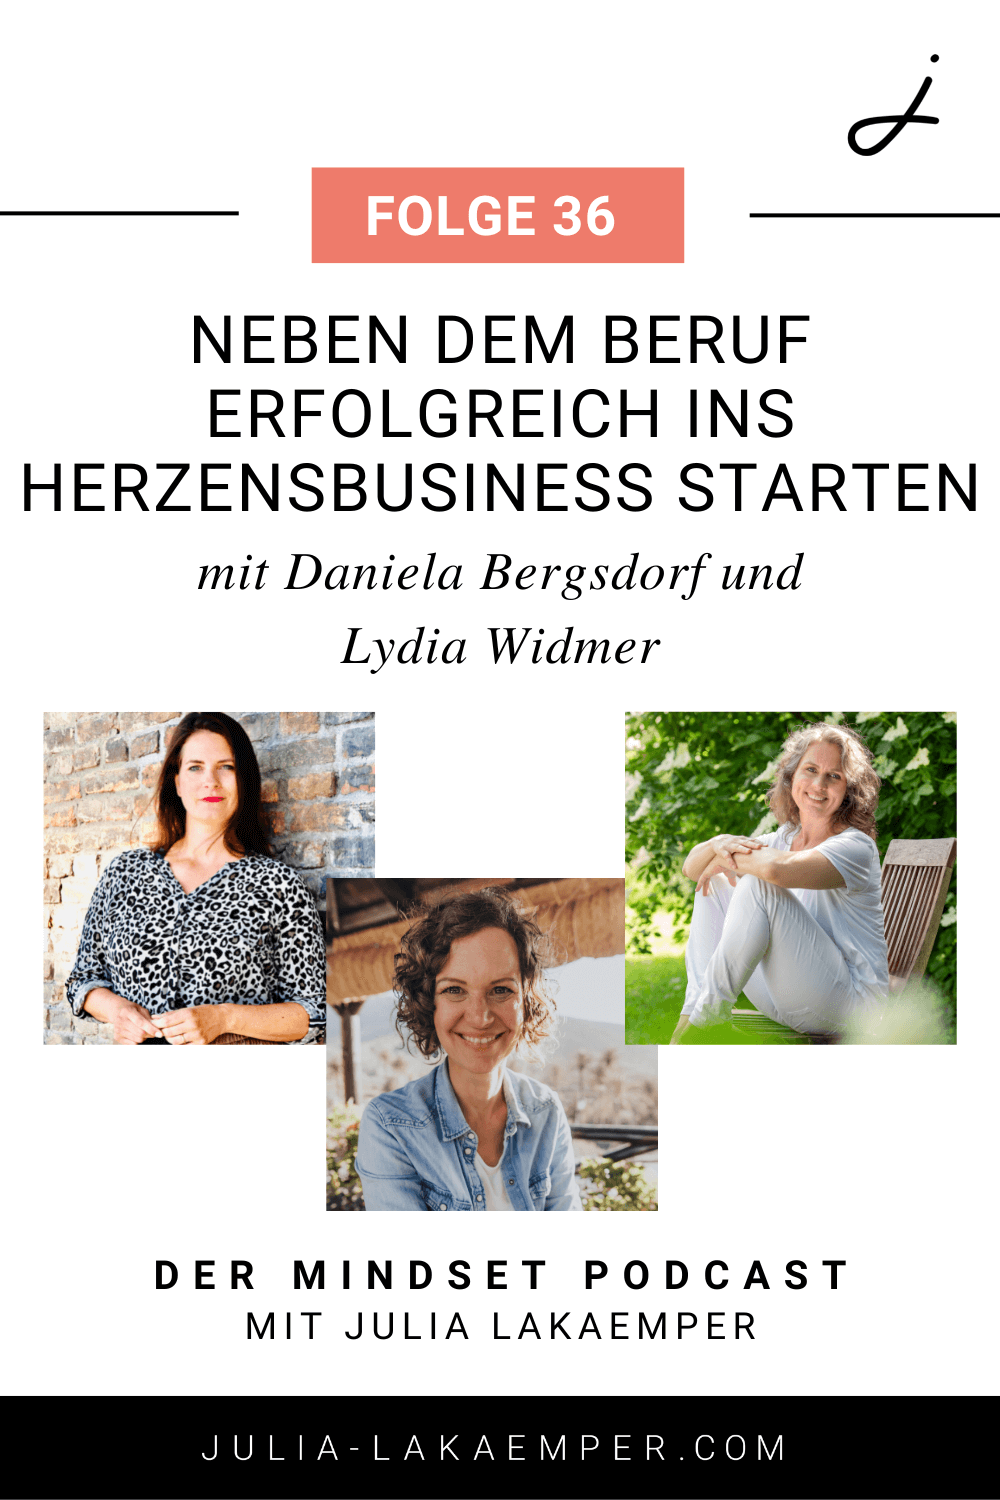 Pinterest Pin zum Podcast-Folge #36"Neben dem Beruf erfolgreich ins Business starten mit Daniela Bergsdorf und Lydia Widmer"